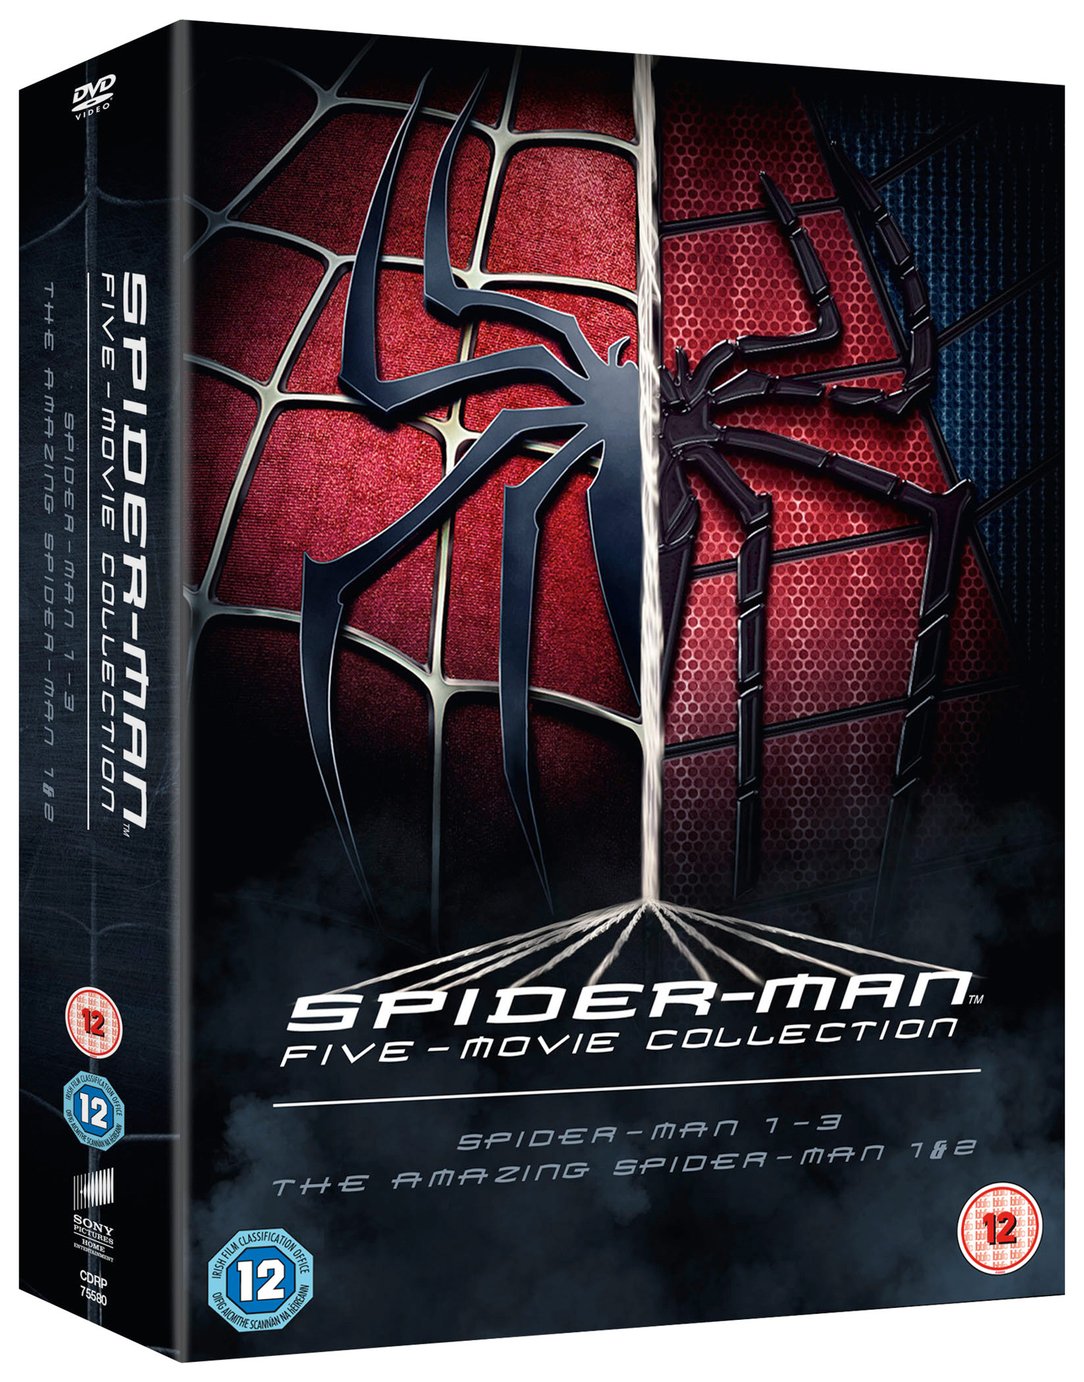 Spider-Man 5 Film Collection DVD Box Set